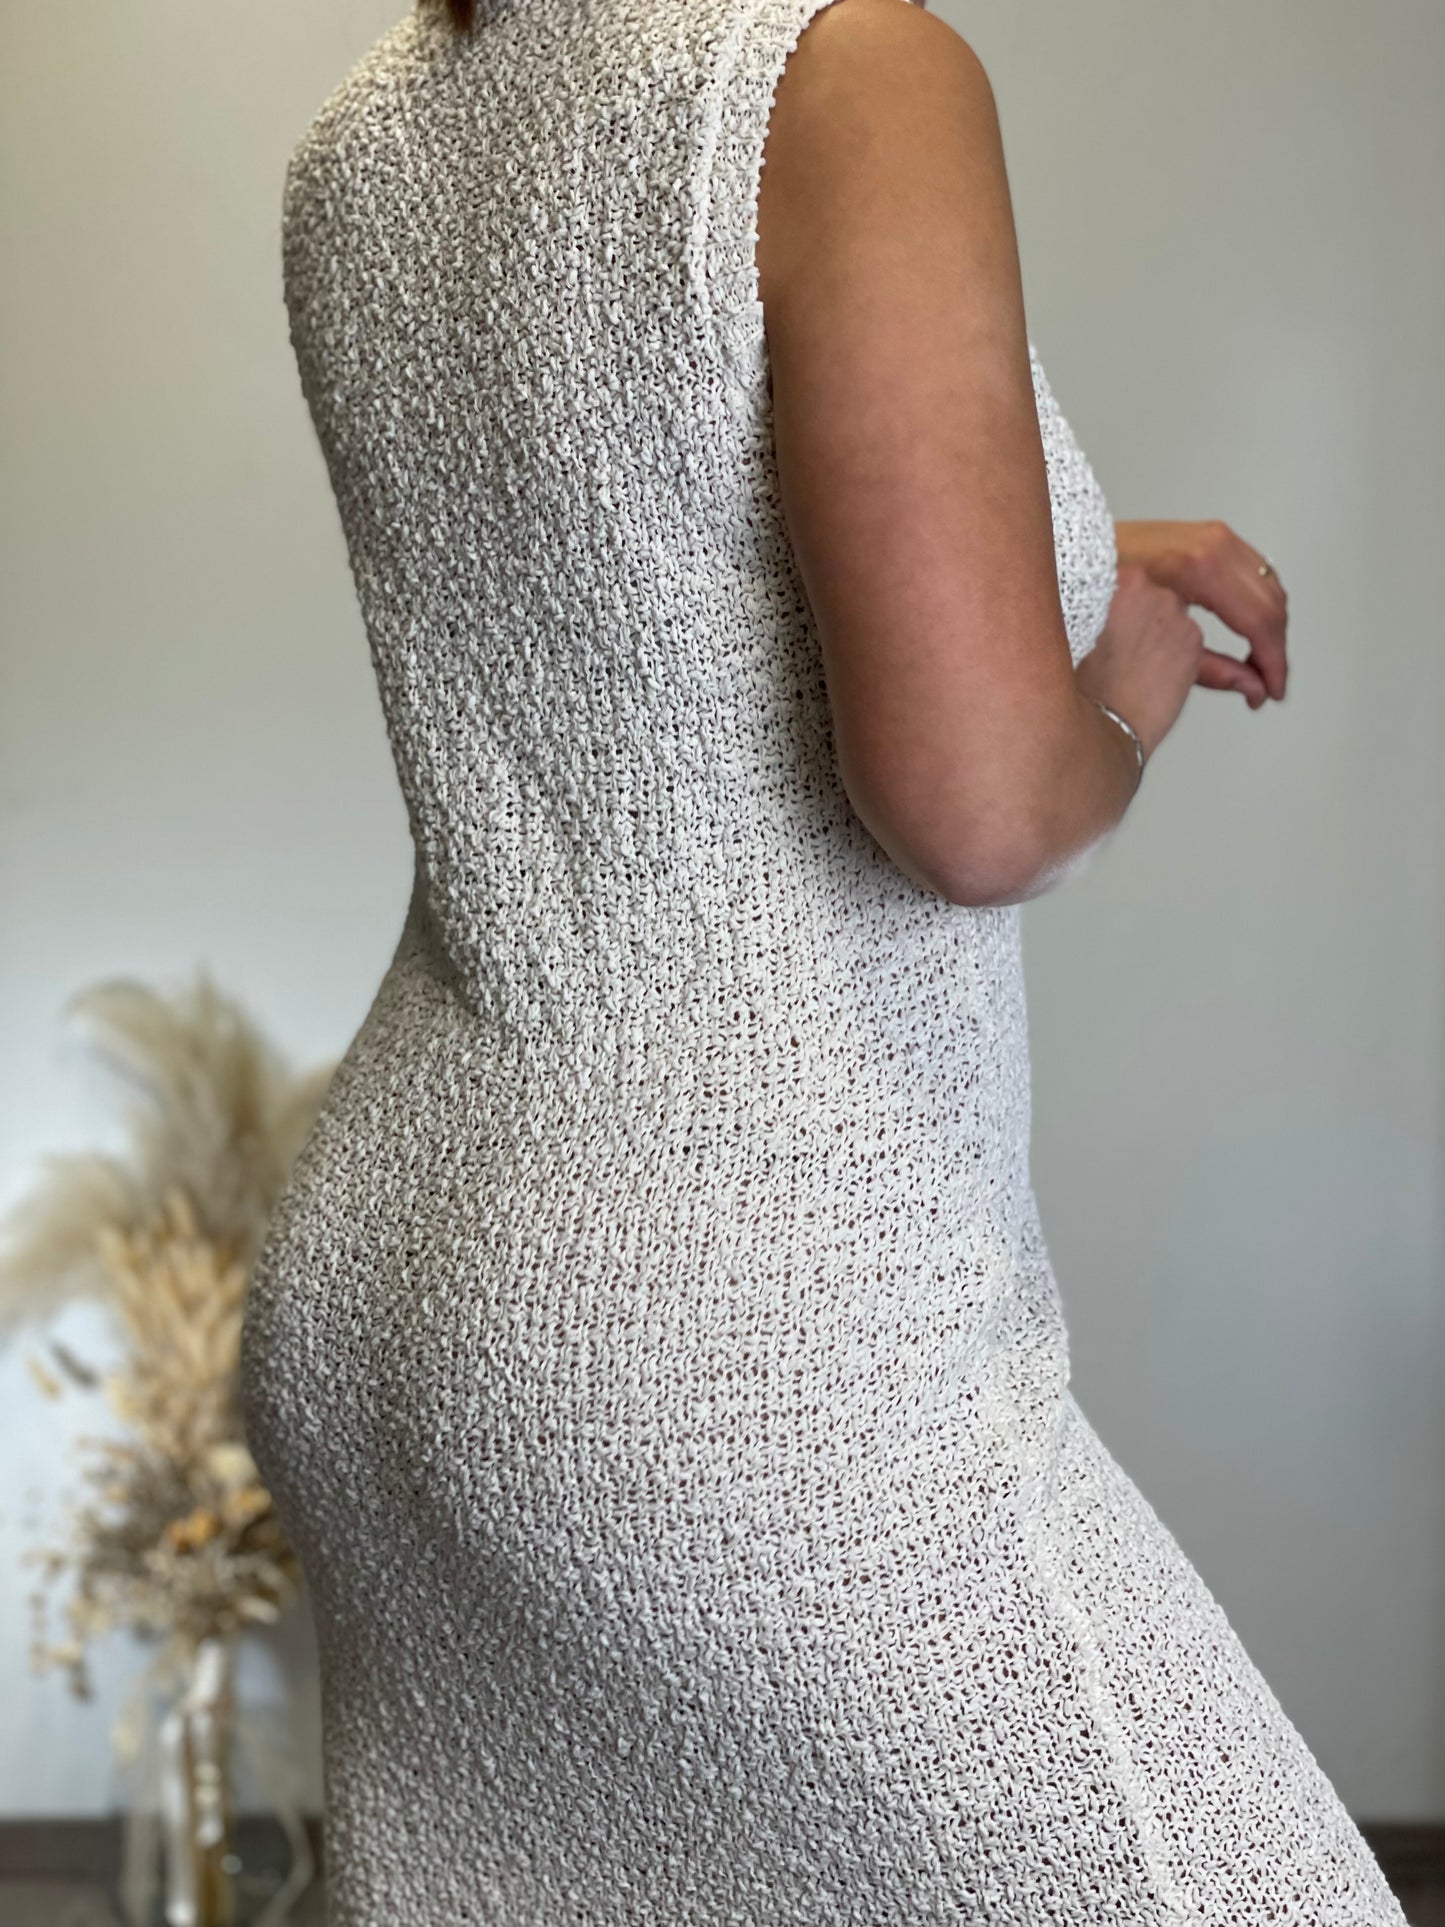 Kleid weiß